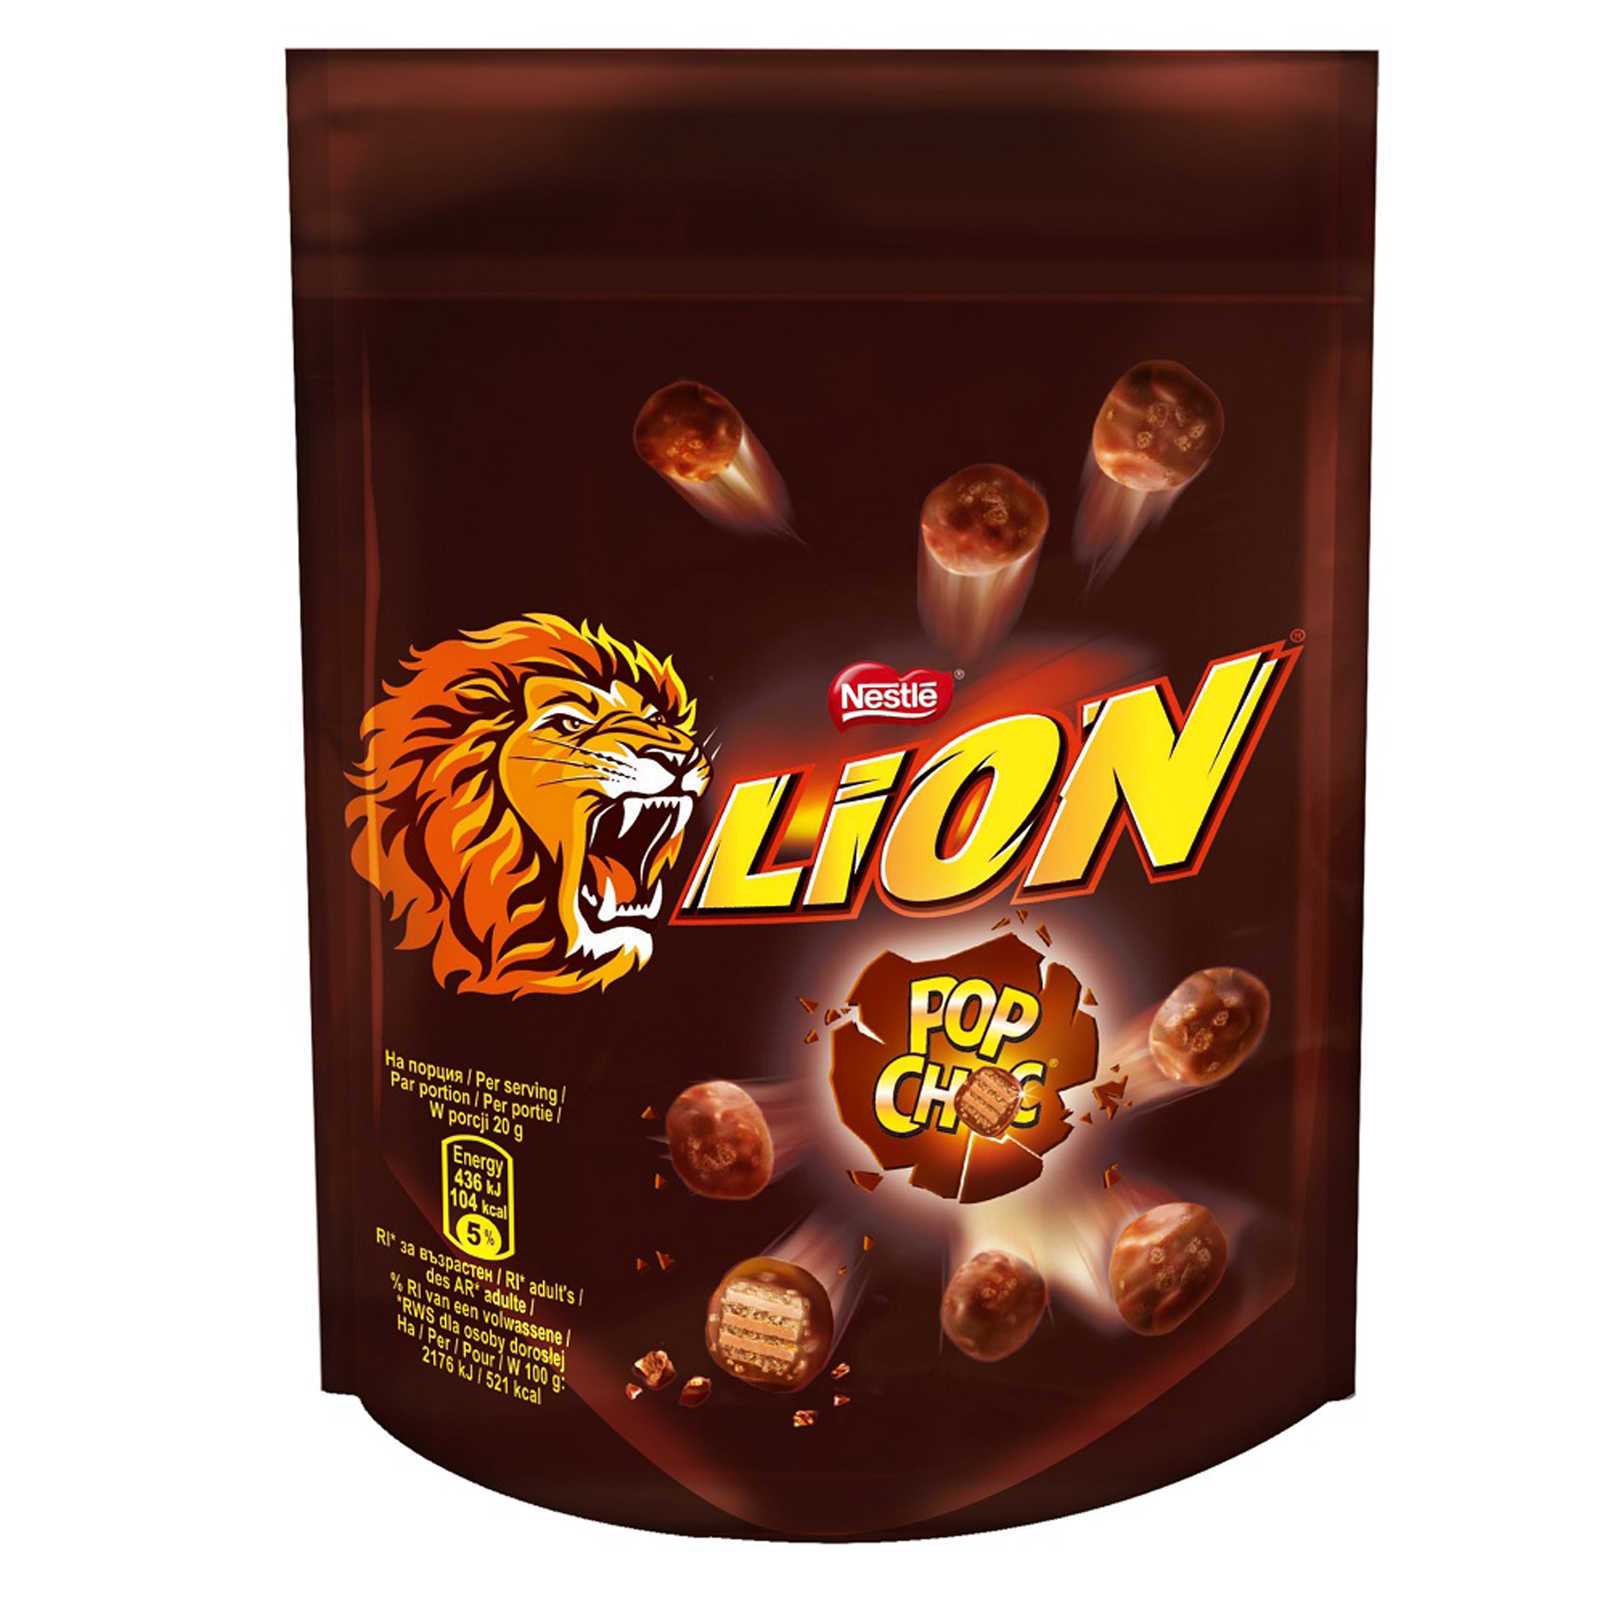 Nestlé-Lion